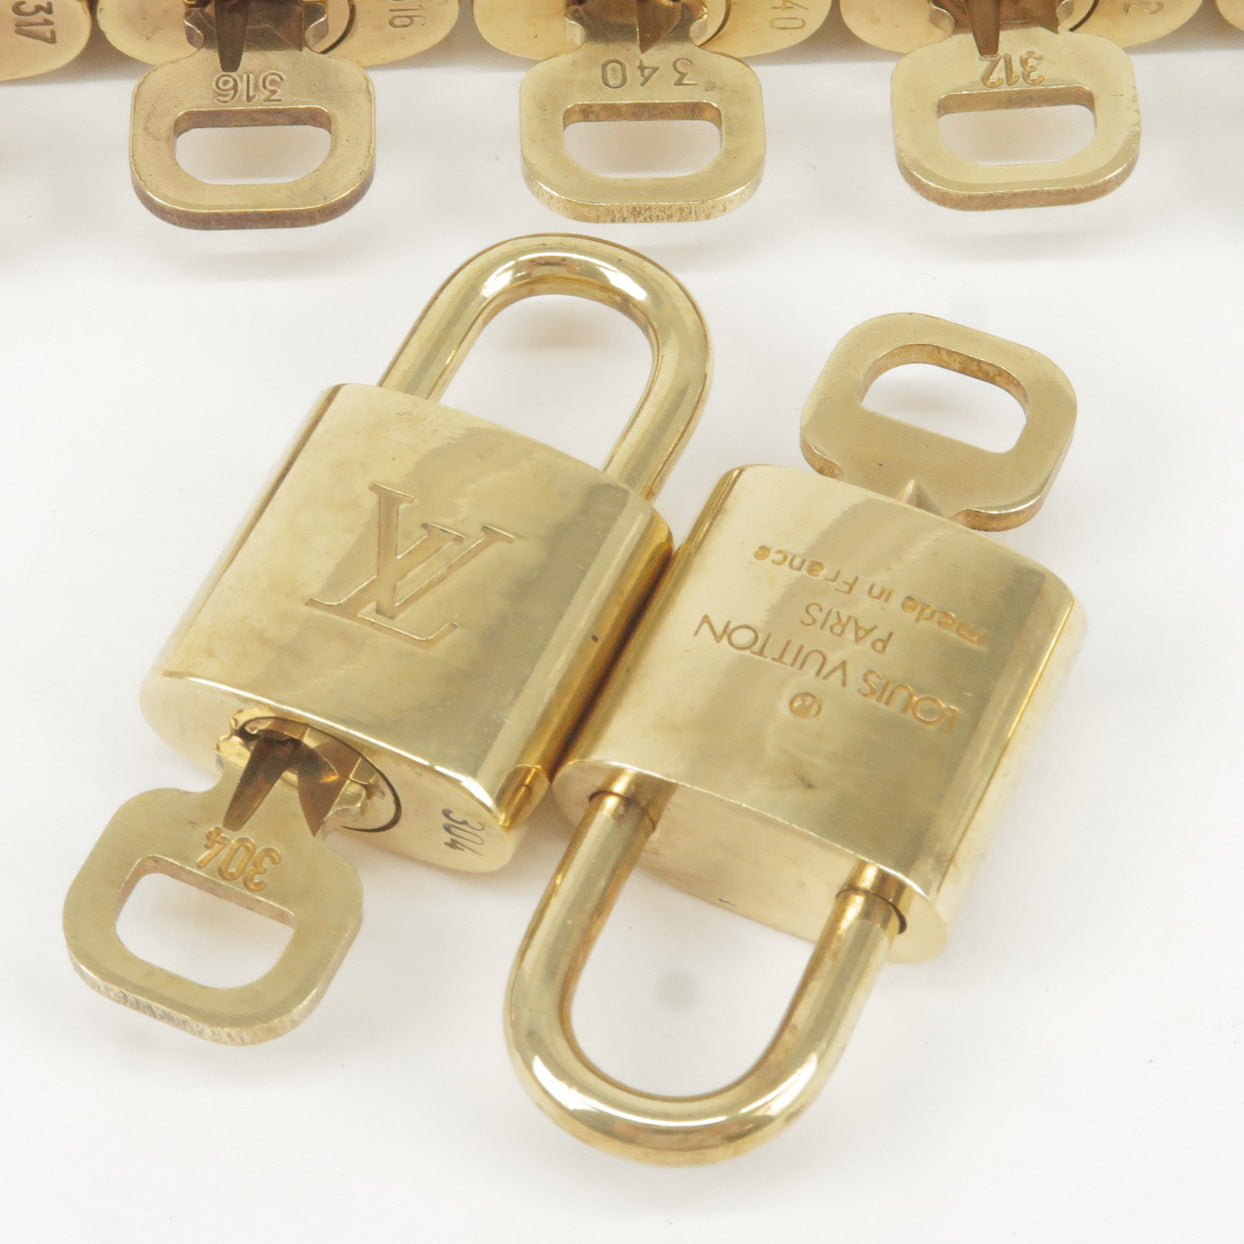 Louis Vuitton Set of 10 Lock & Key Cadena Key Lock Metal Gold